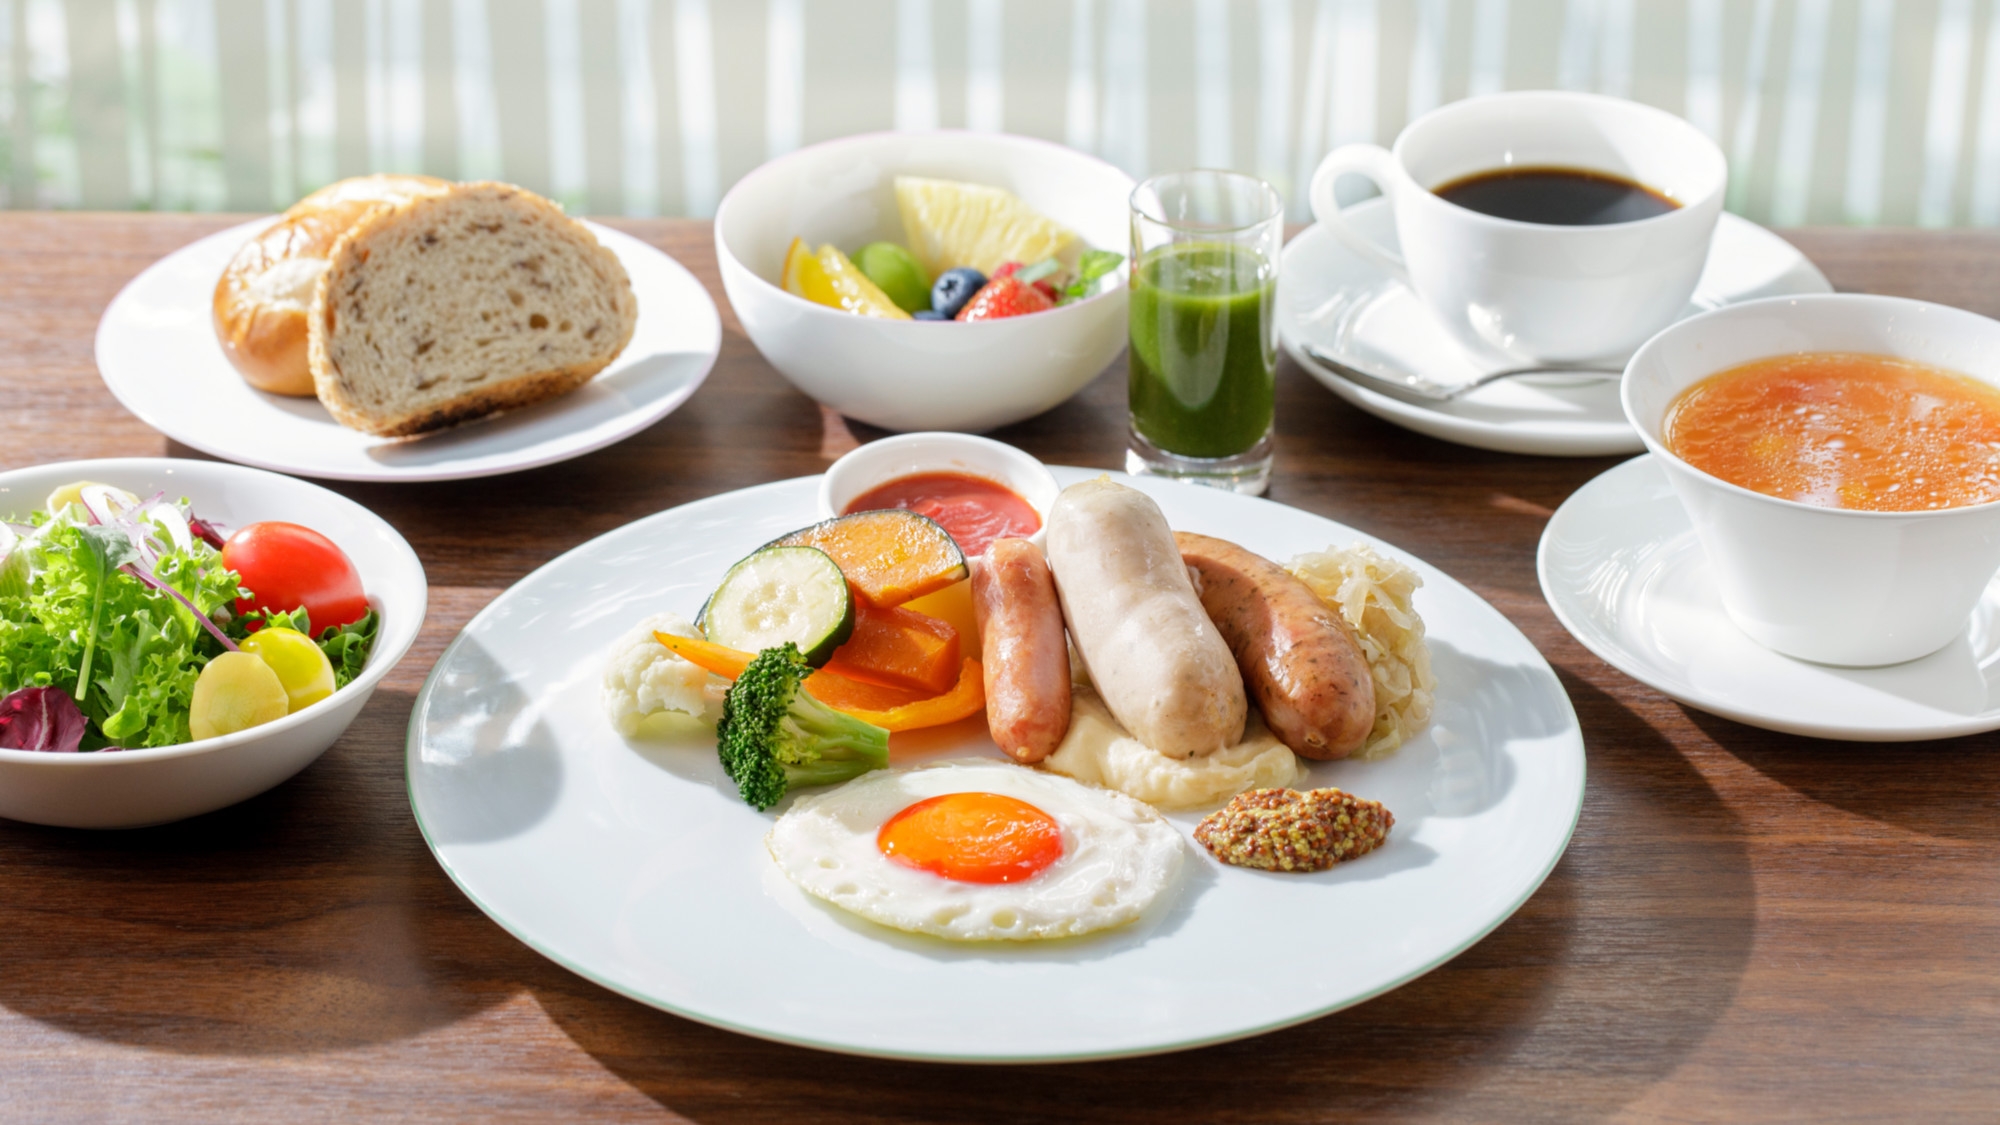 【 スタンダードプラン 】3種類のメニューから選べる朝食。デイリーブレックファスト付き [朝食付]